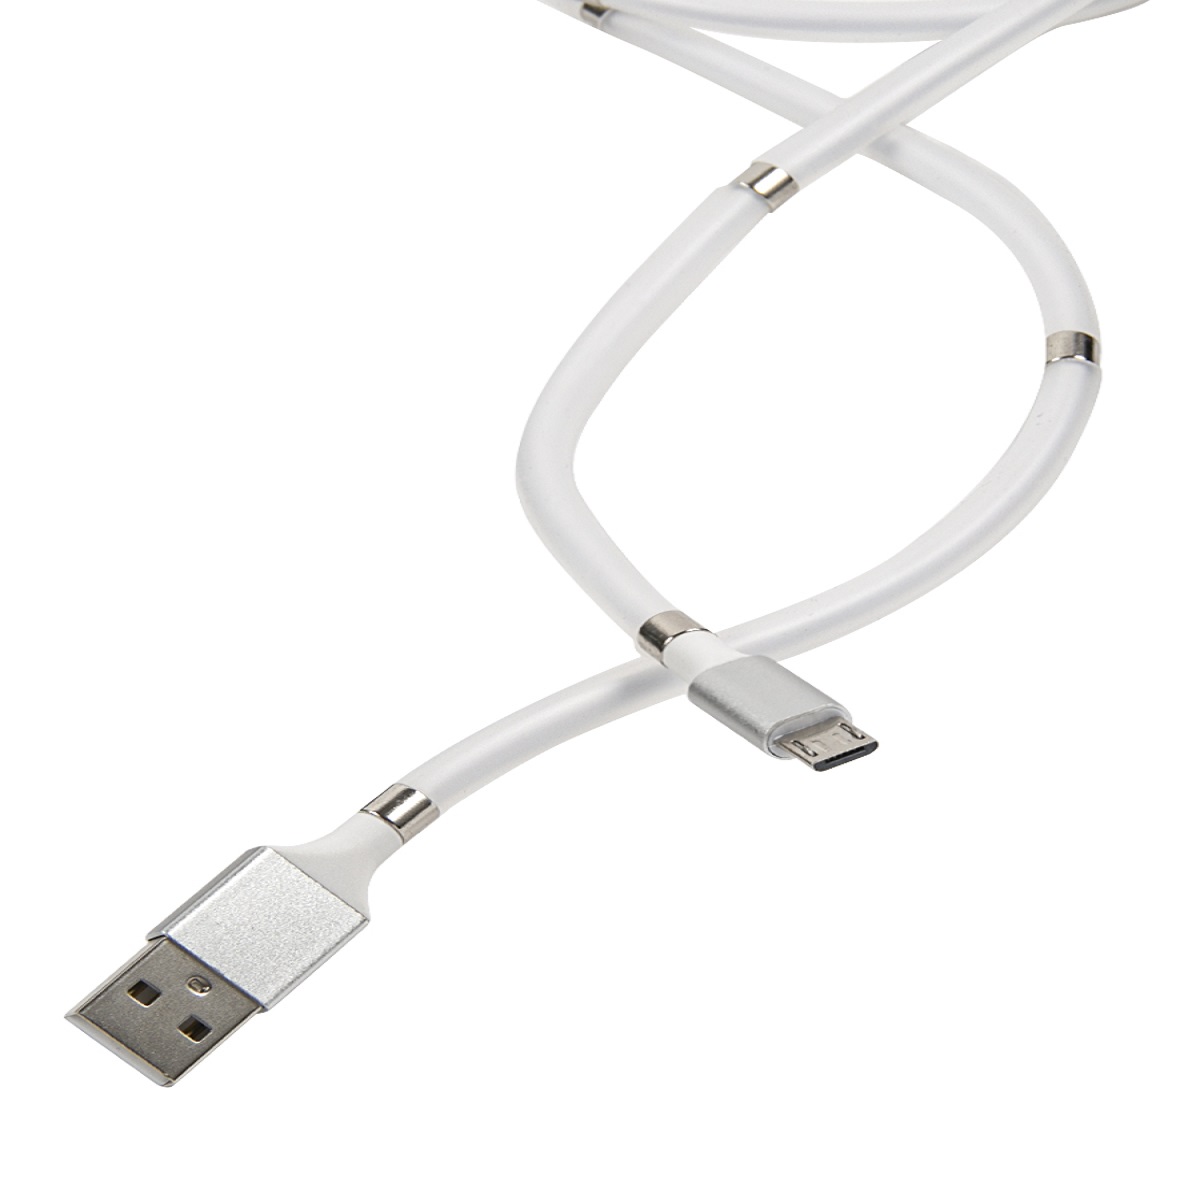 Дата-кабель mObility USB - micro USB белый скручивание на магнитах - фото 2